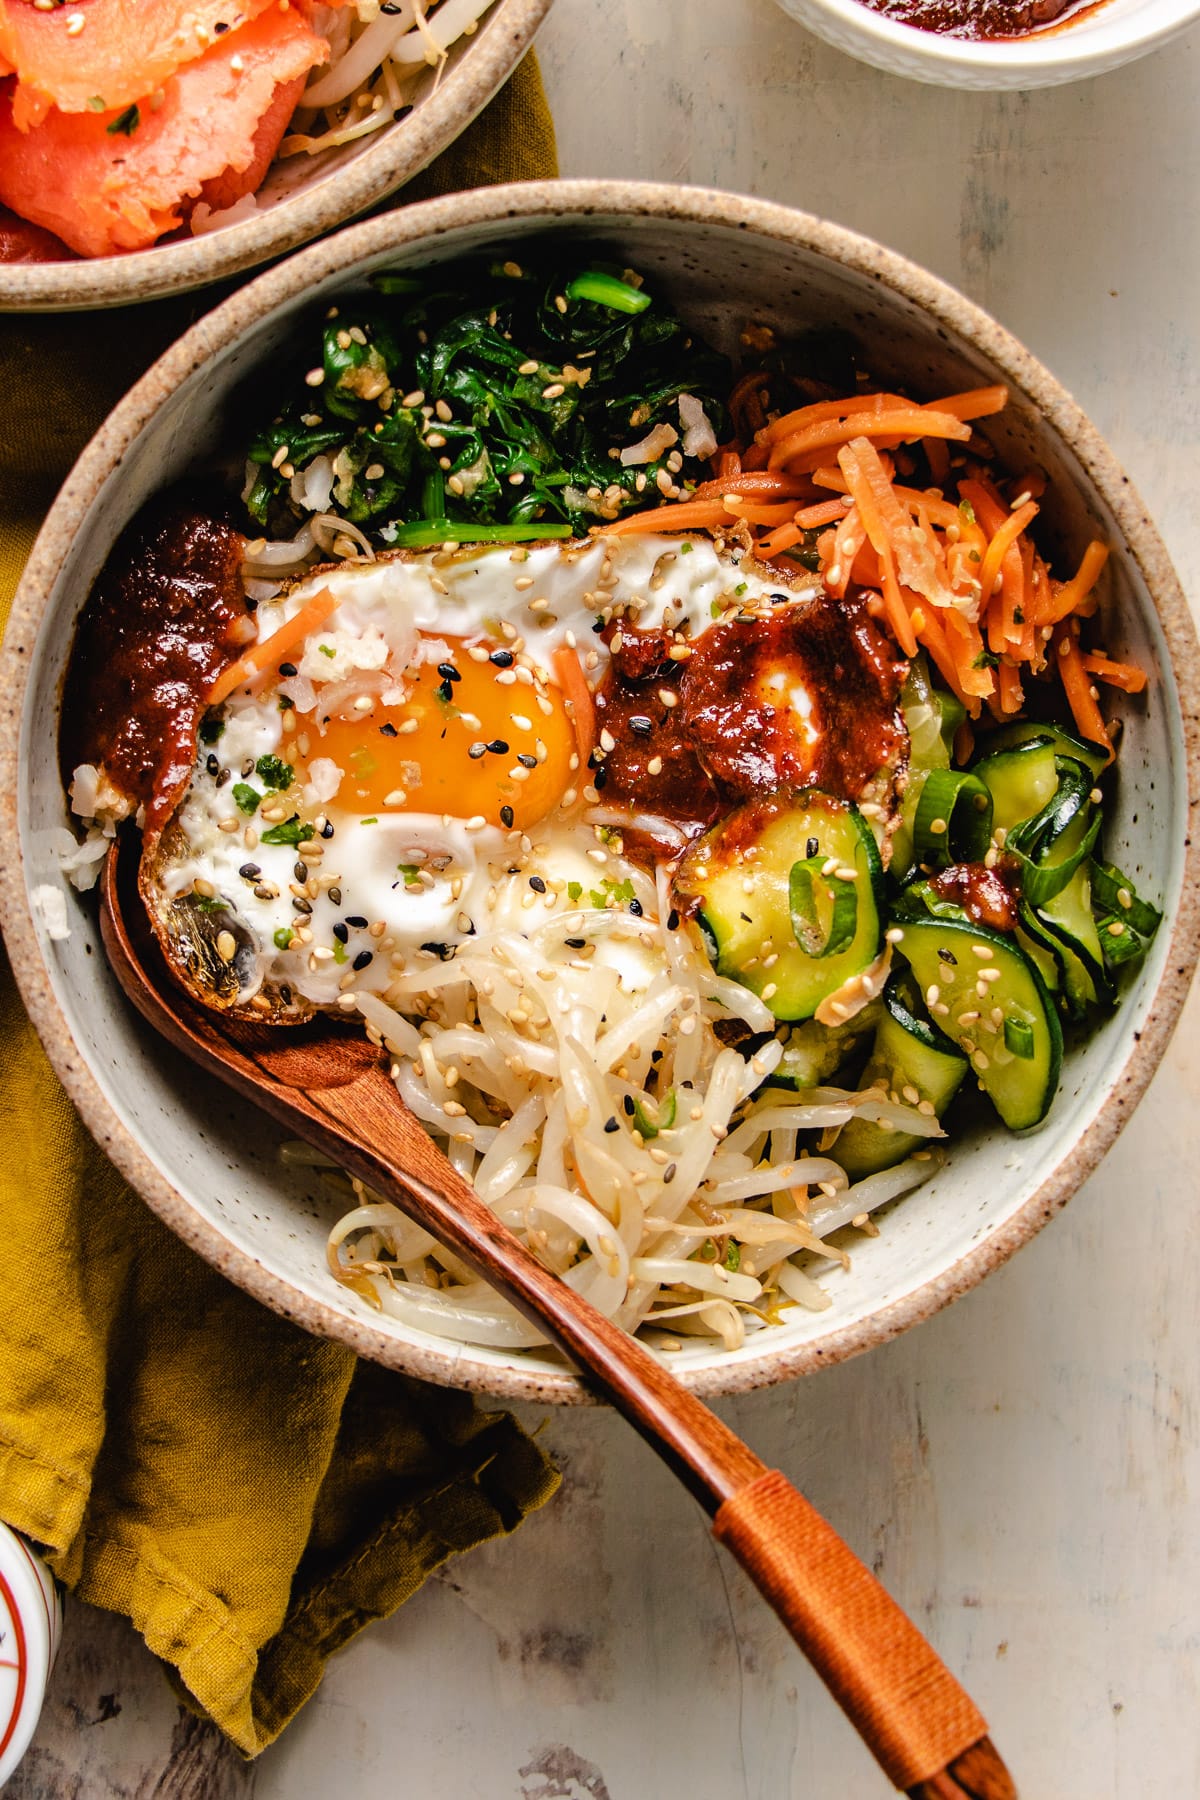 Korean bibimbap vegetarian version served in a bowl